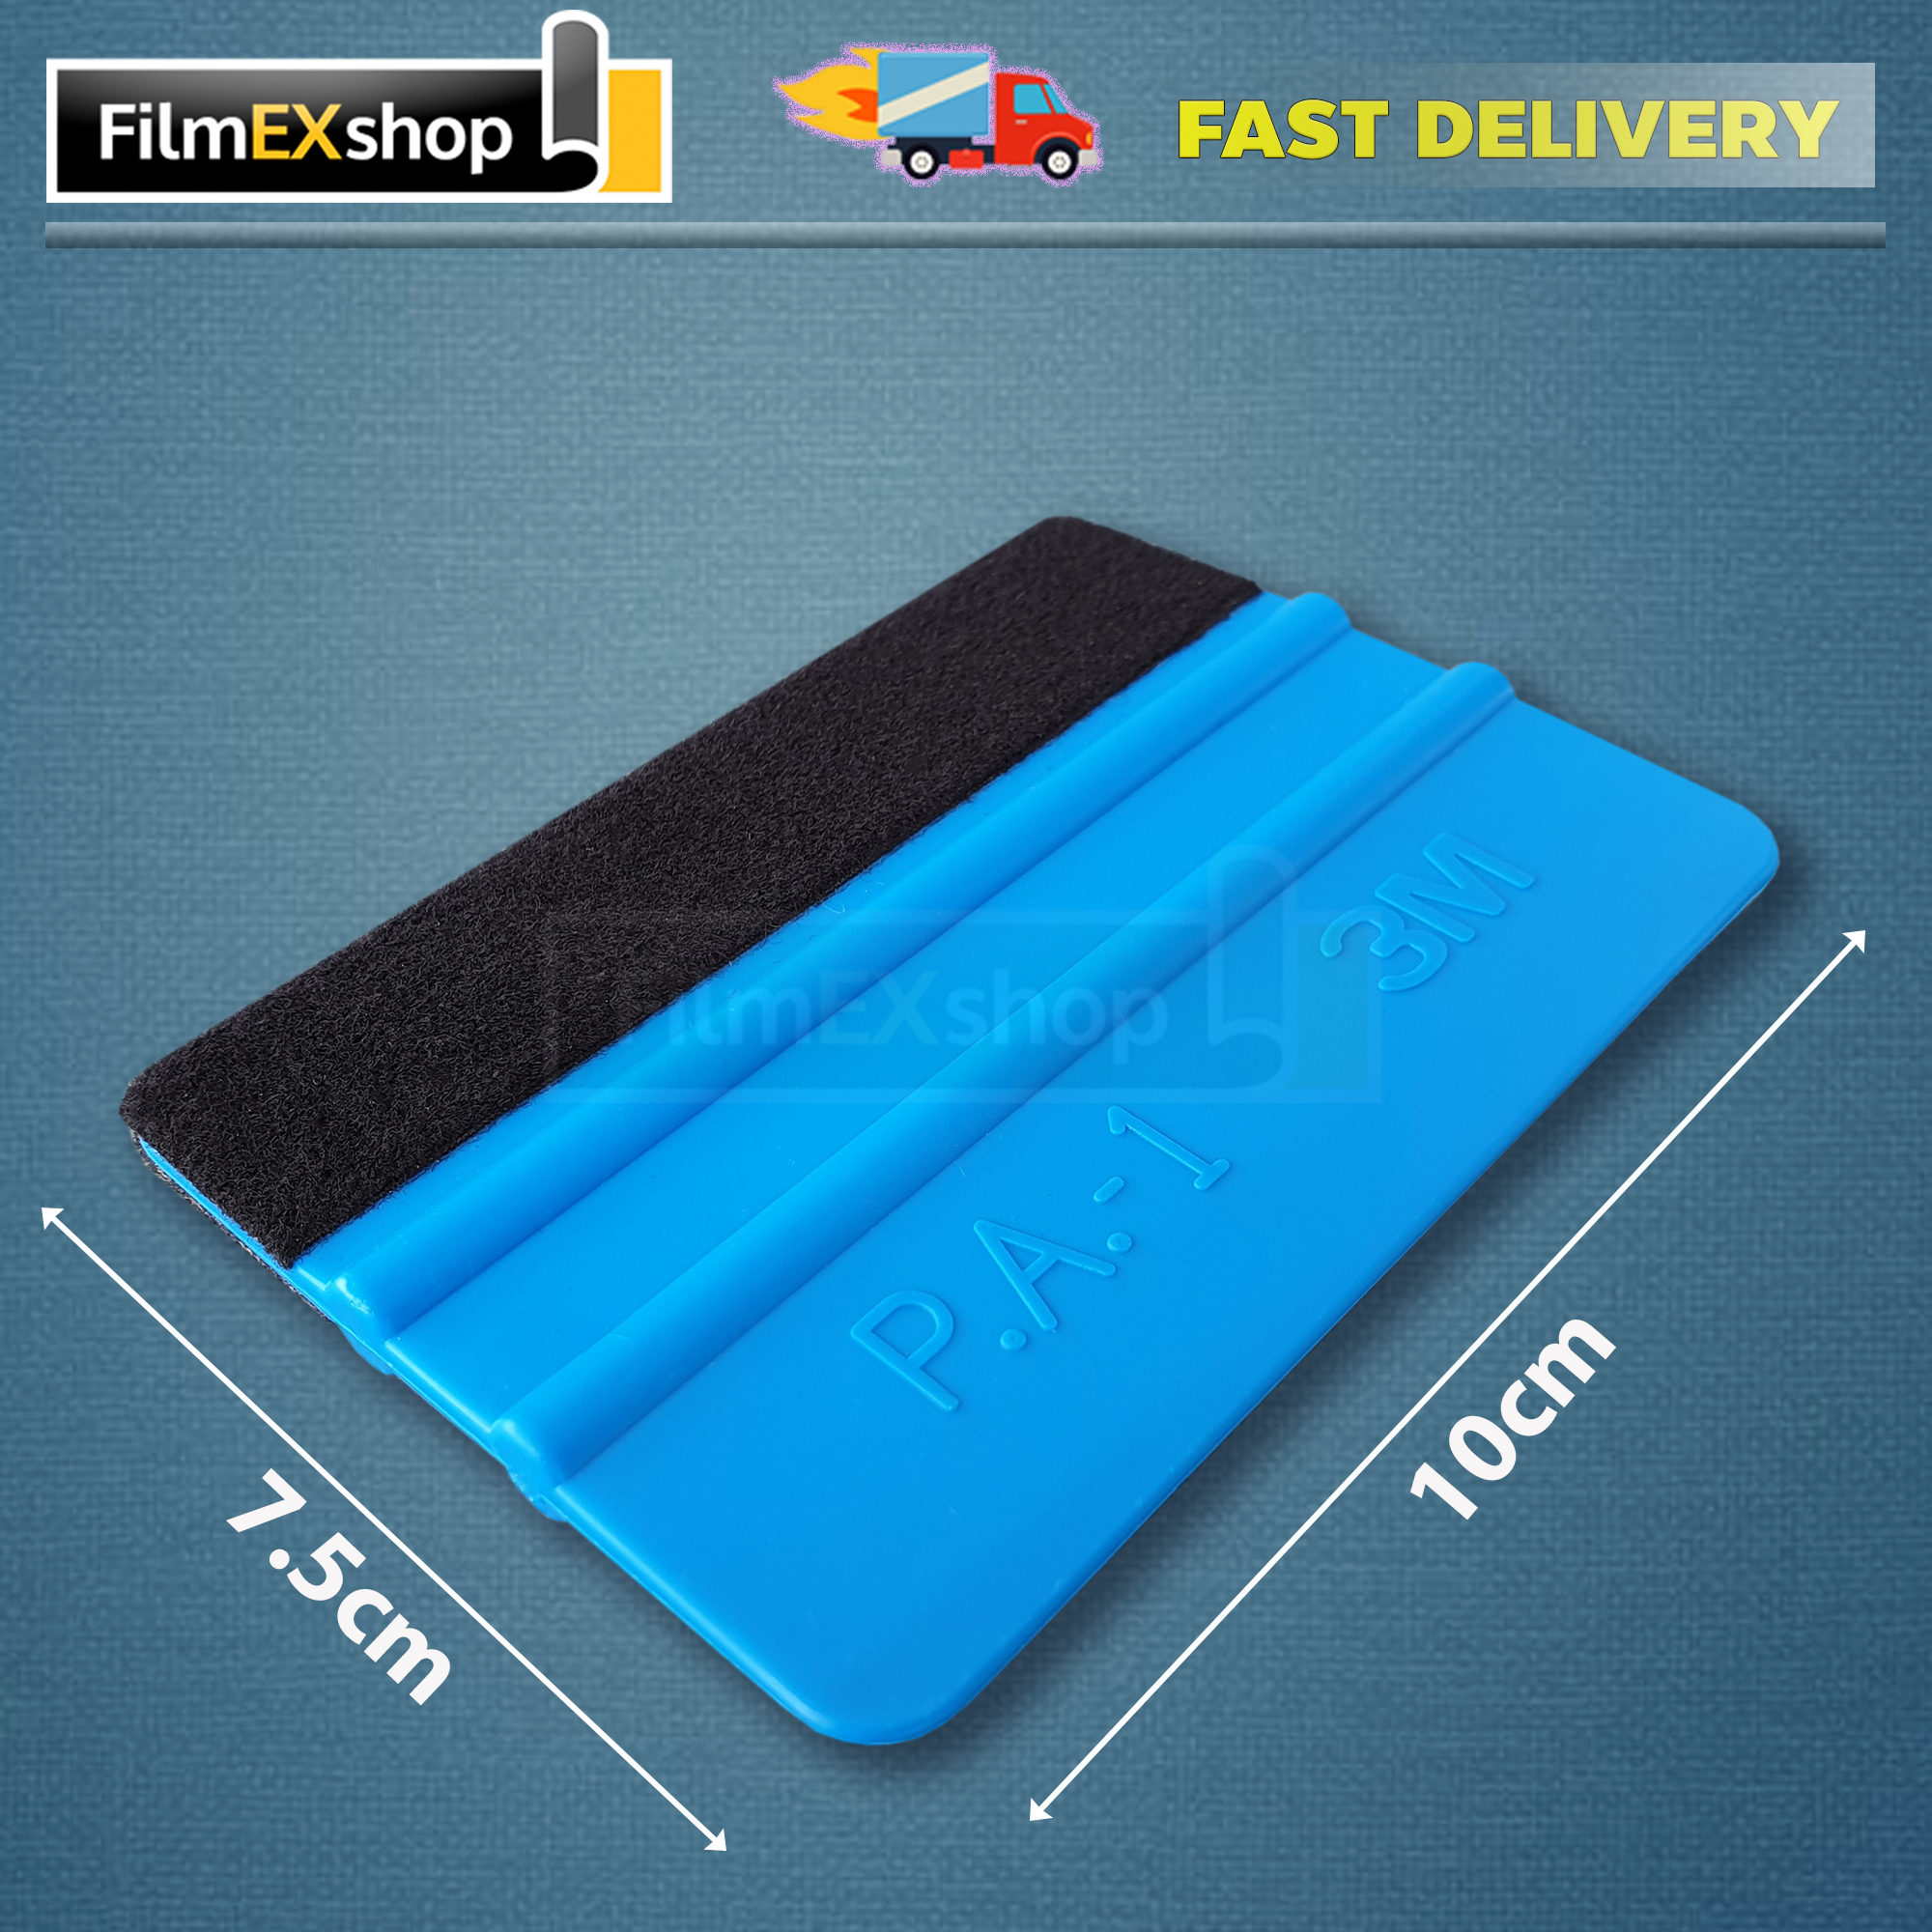 ยางรีดสติ๊กเกอร์ 3M P.A.-1  ขนาด 7.5x10cm หุ้มผ้าสีดำหนึ่งข้าง  สีฟ้า  (แบบอ่อน)